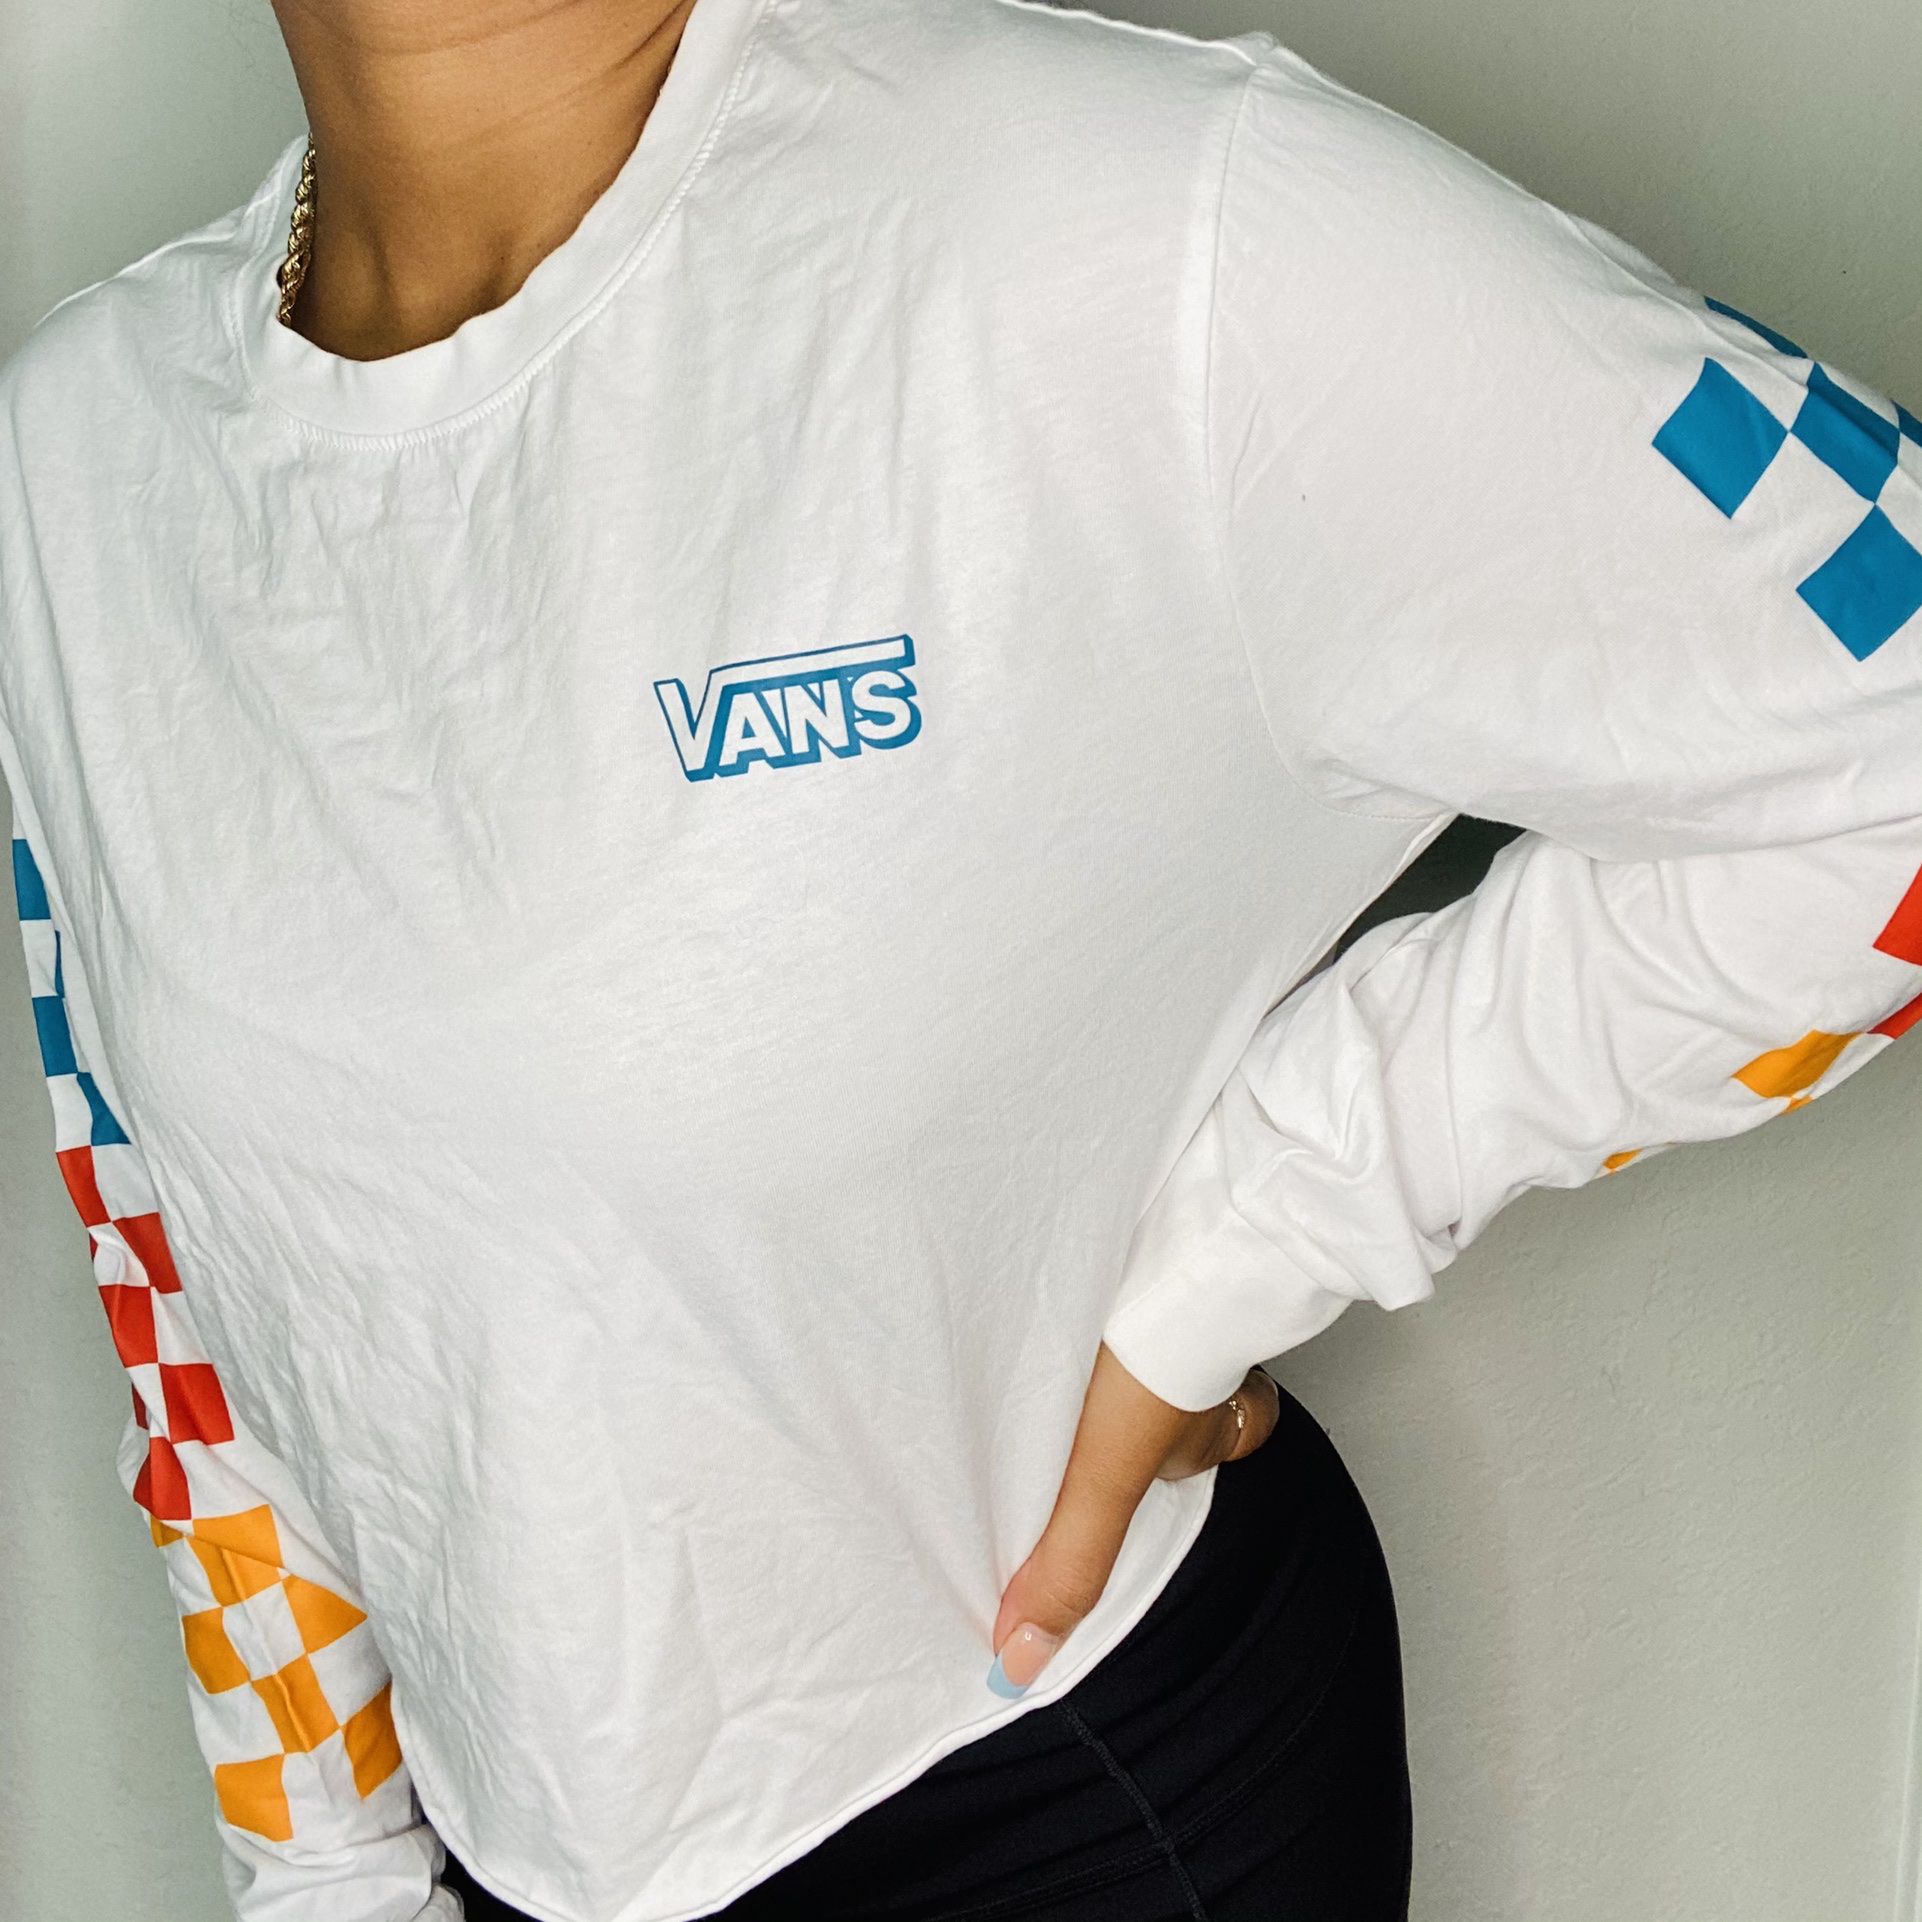 Vans Long Sleeve T-shirt